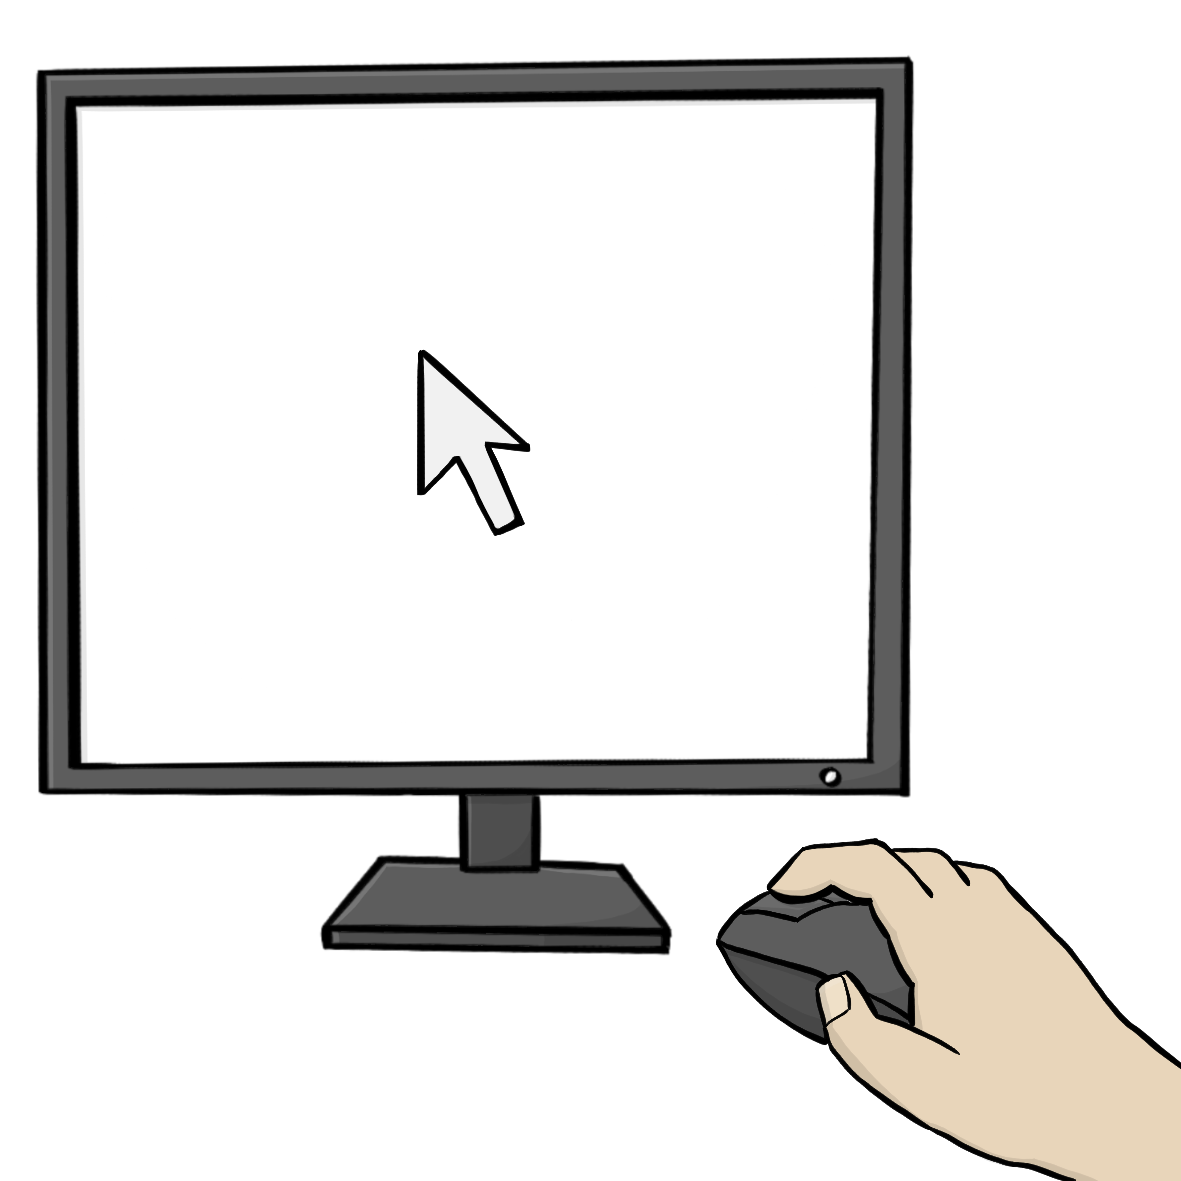 Ein Computerbildschirm und eine Hand auf einer Computermaus. Auf dem Bildschirm ist ein Pfeil.